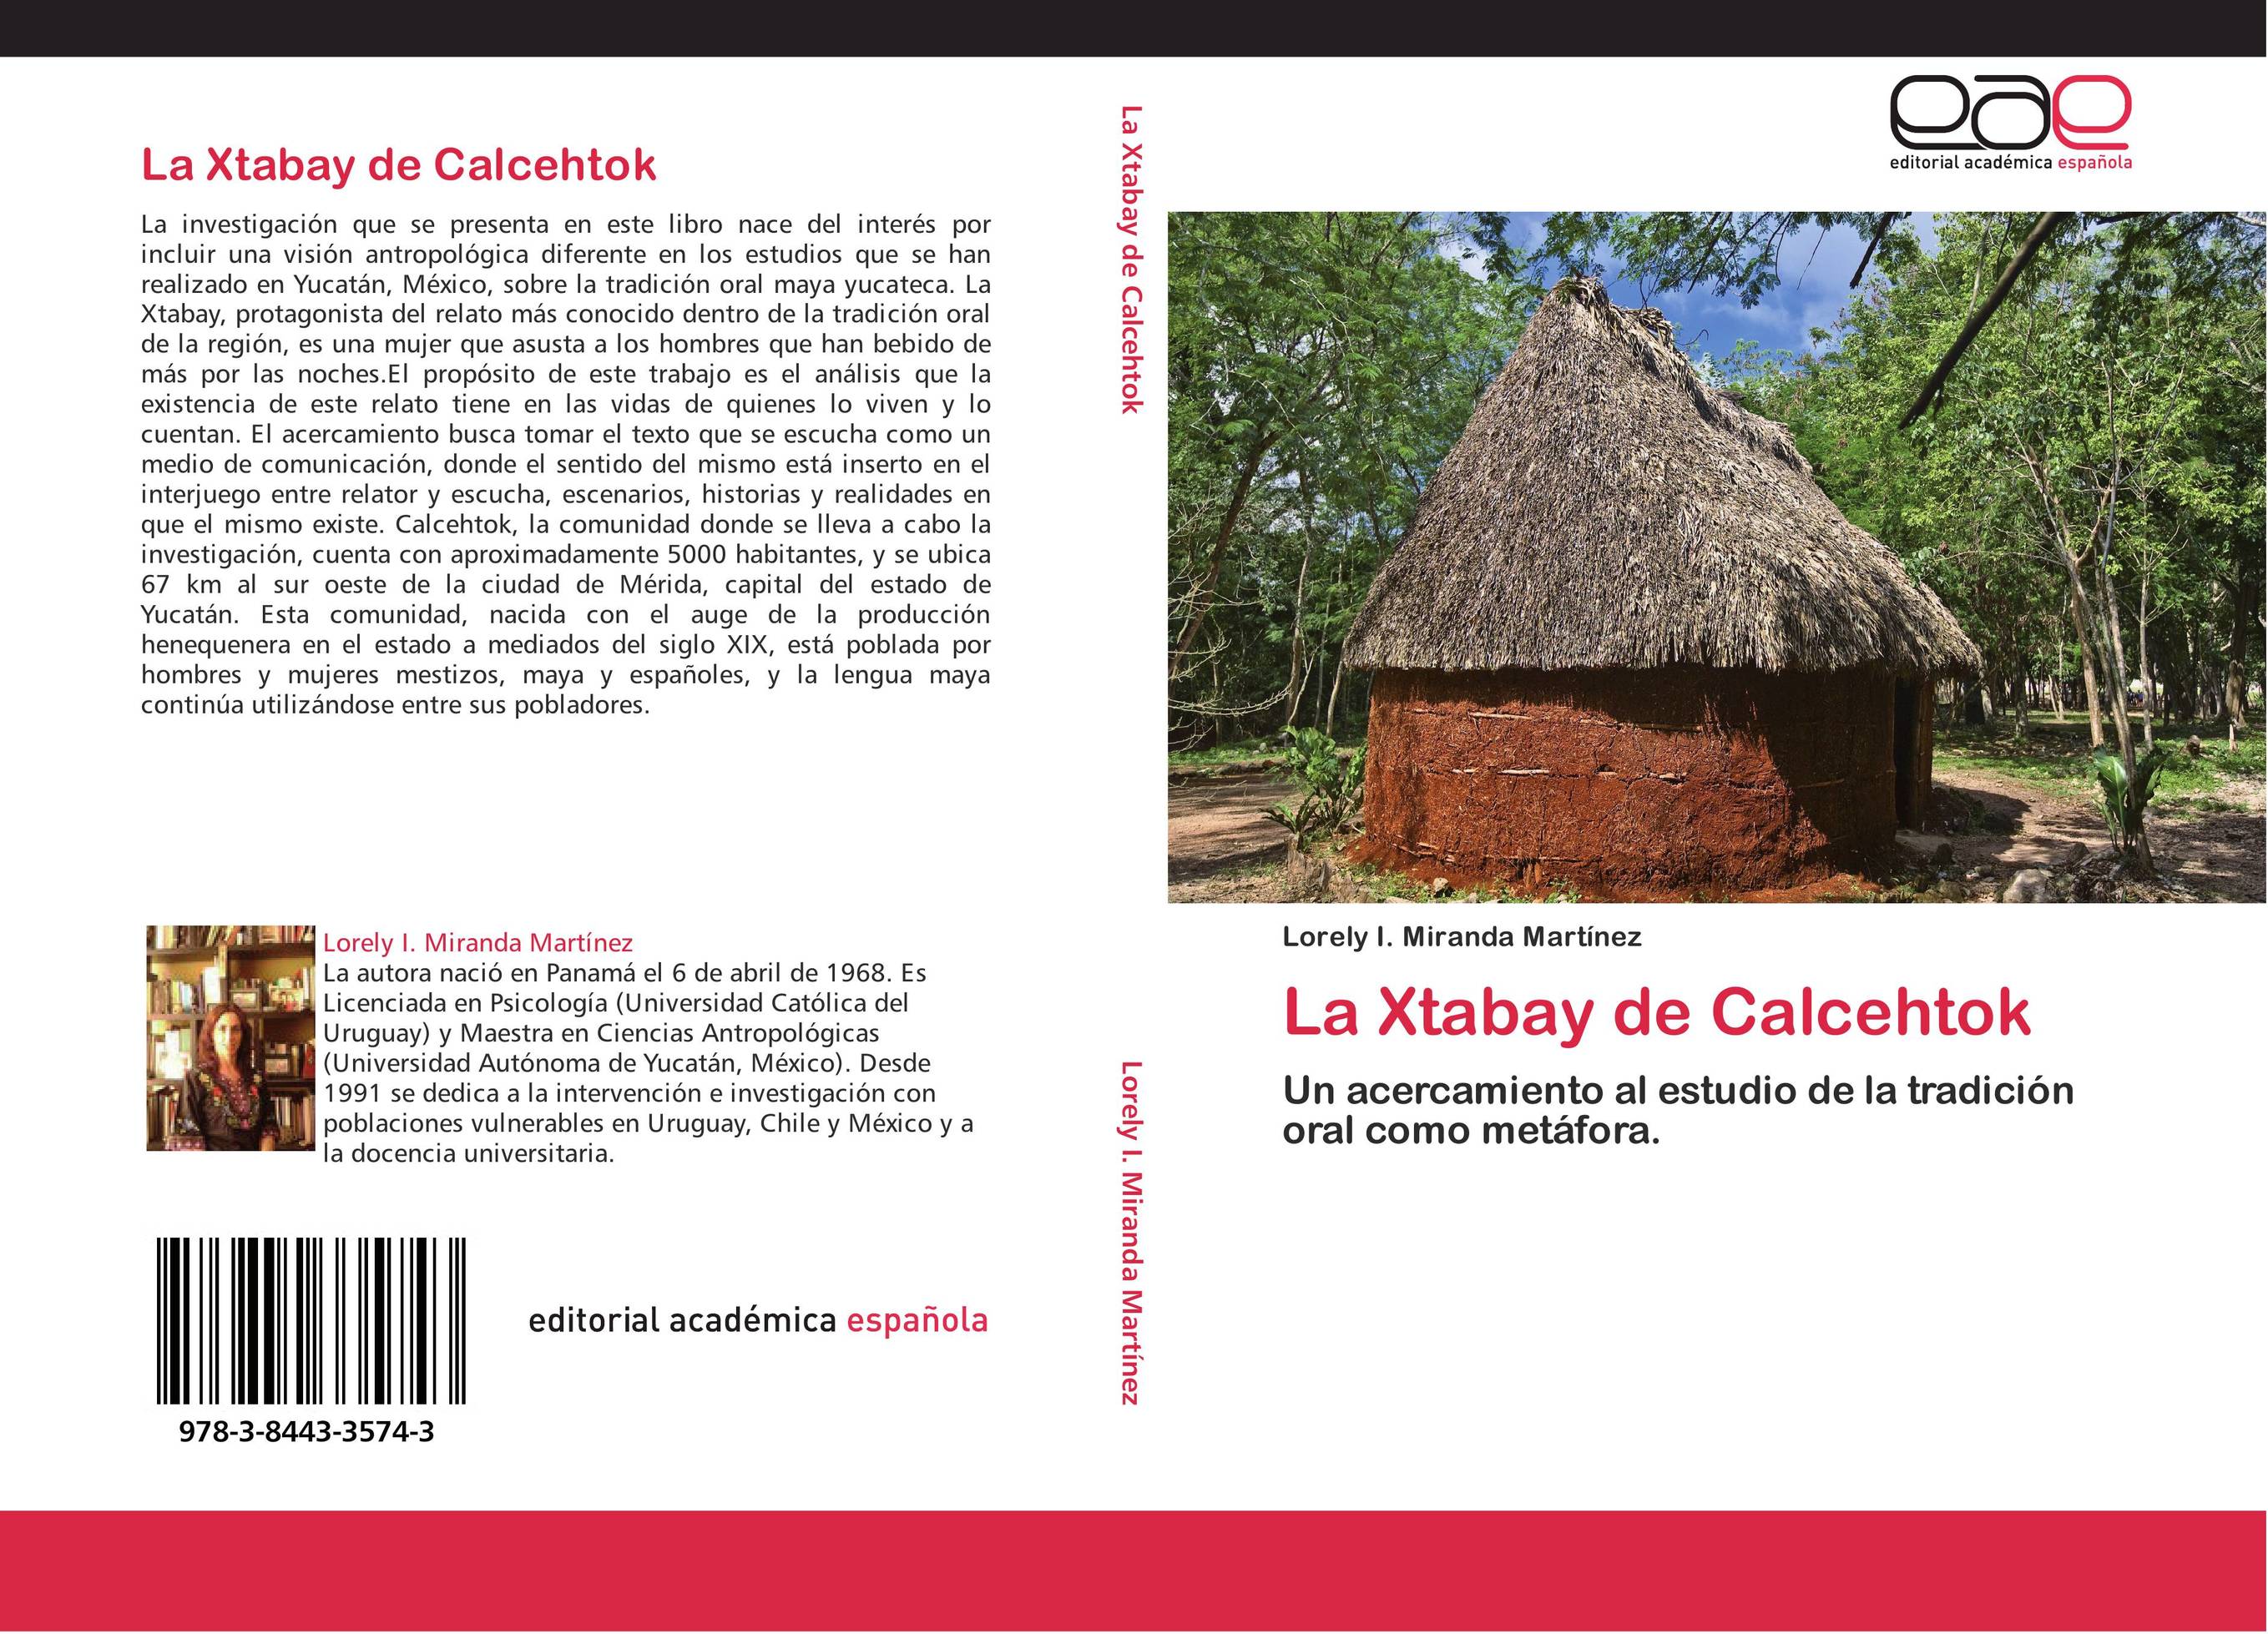 La Xtabay de Calcehtok